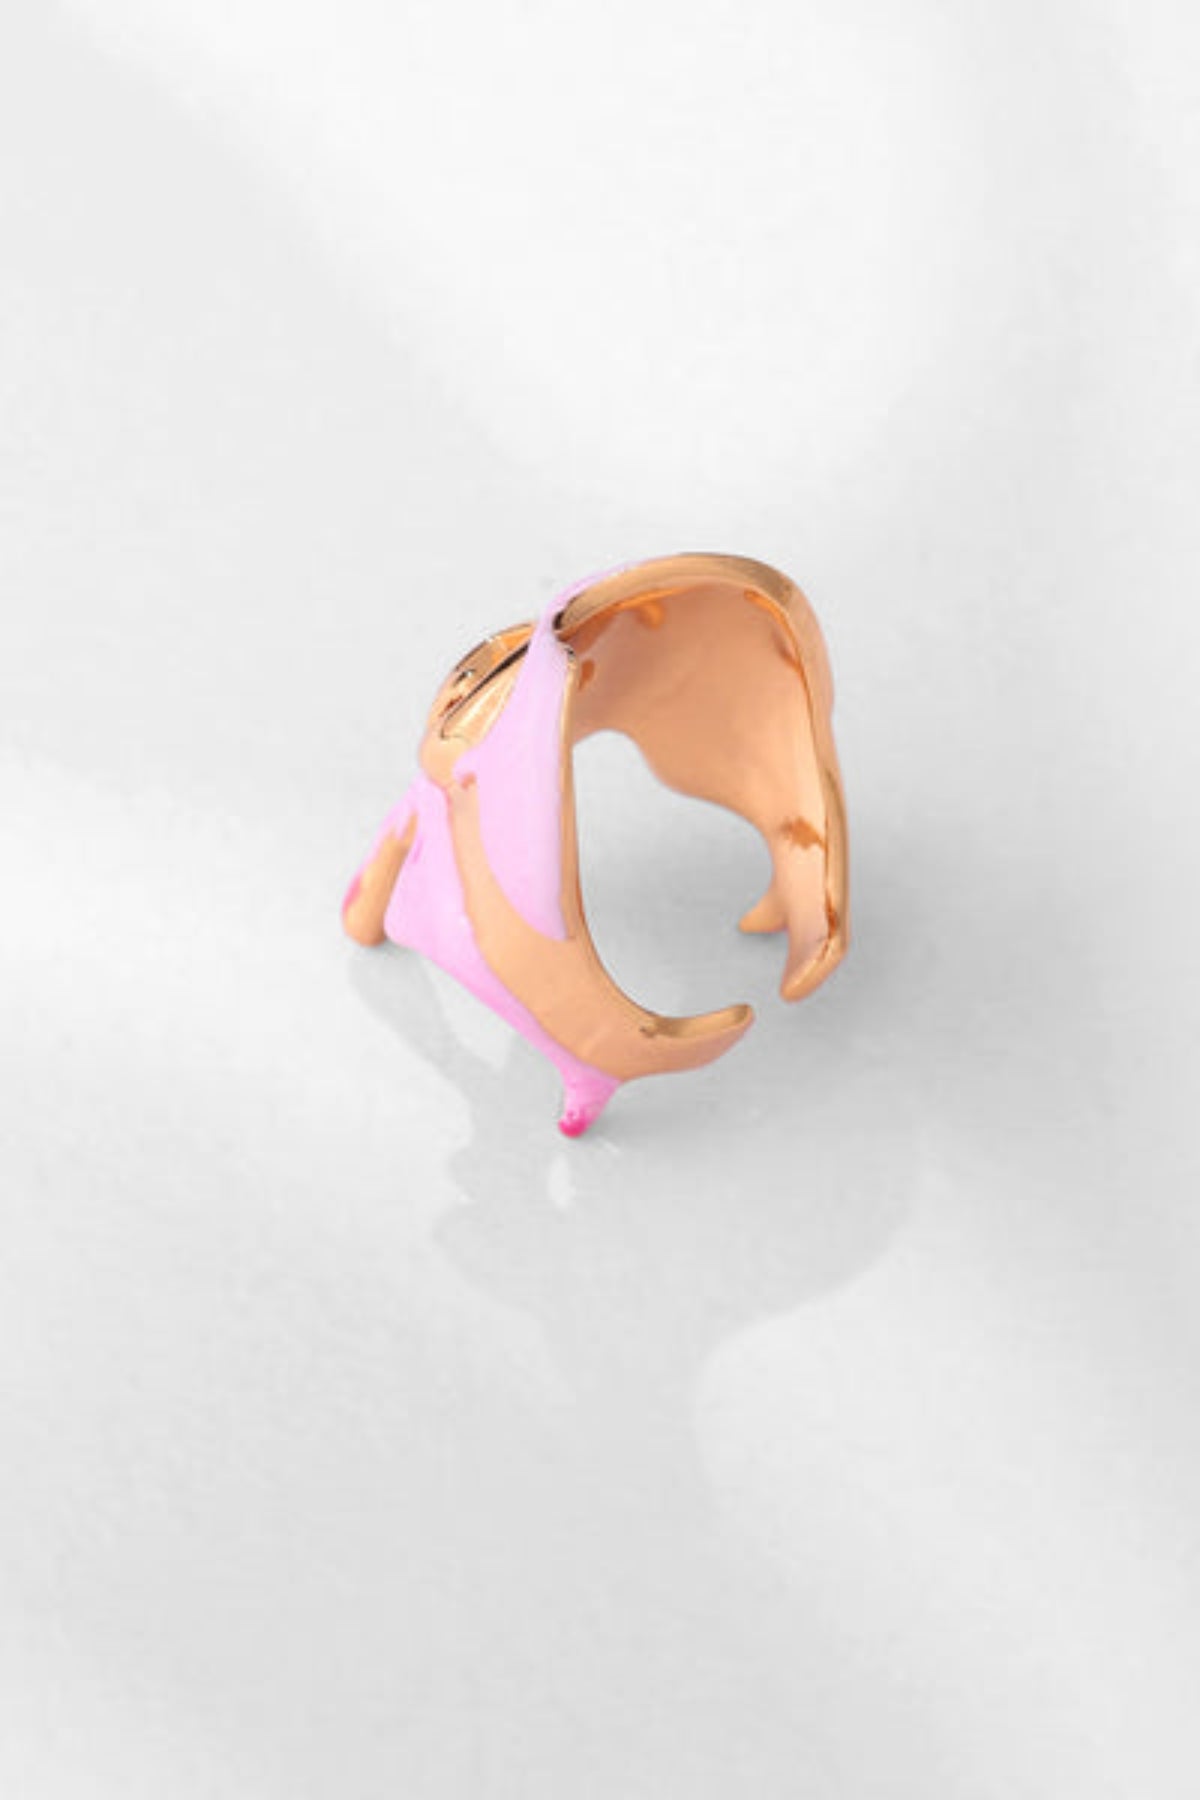 Molten Ring in Bubblegum Pink